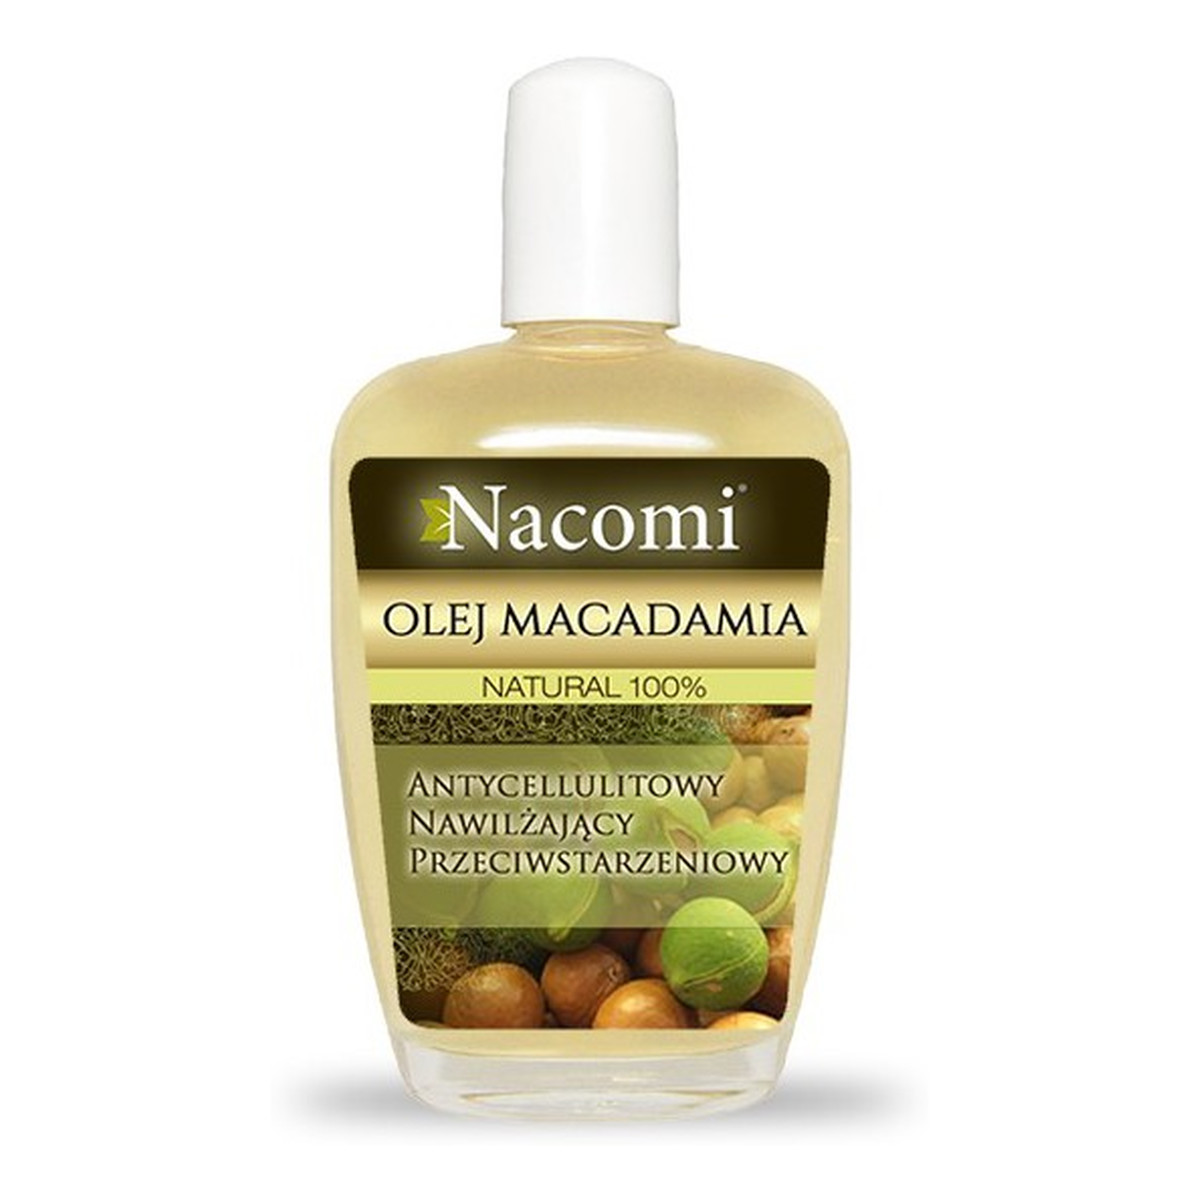 Nacomi Rafinowany Natural 100% Olej Macadamia Antycellulitowy Nawilżający Przeciwstarzeniowy 30ml